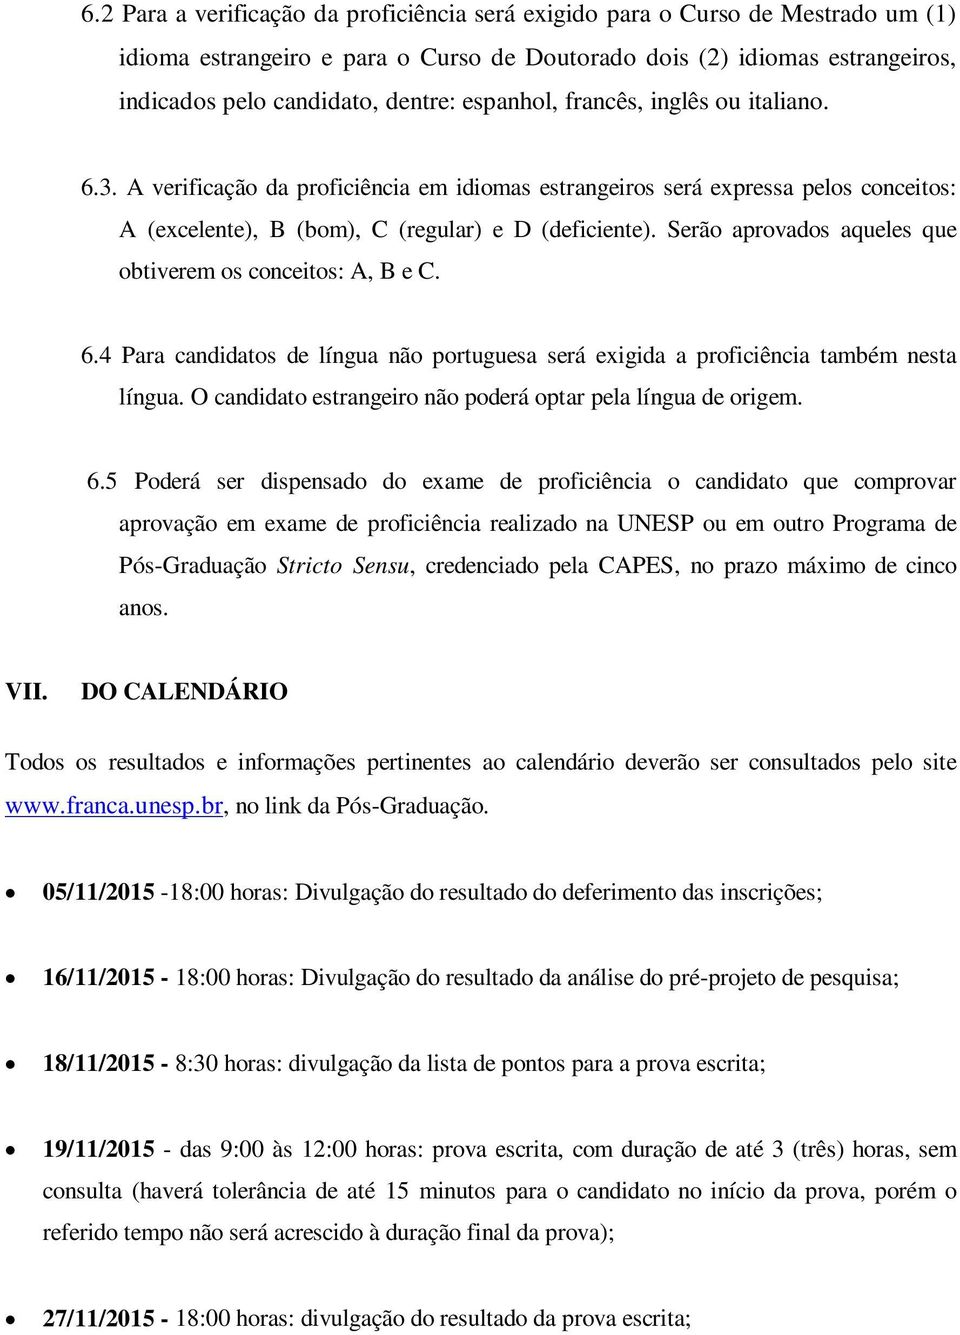 Serão aprovados aqueles que obtiverem os conceitos: A, B e C. 6.4 Para candidatos de língua não portuguesa será exigida a proficiência também nesta língua.